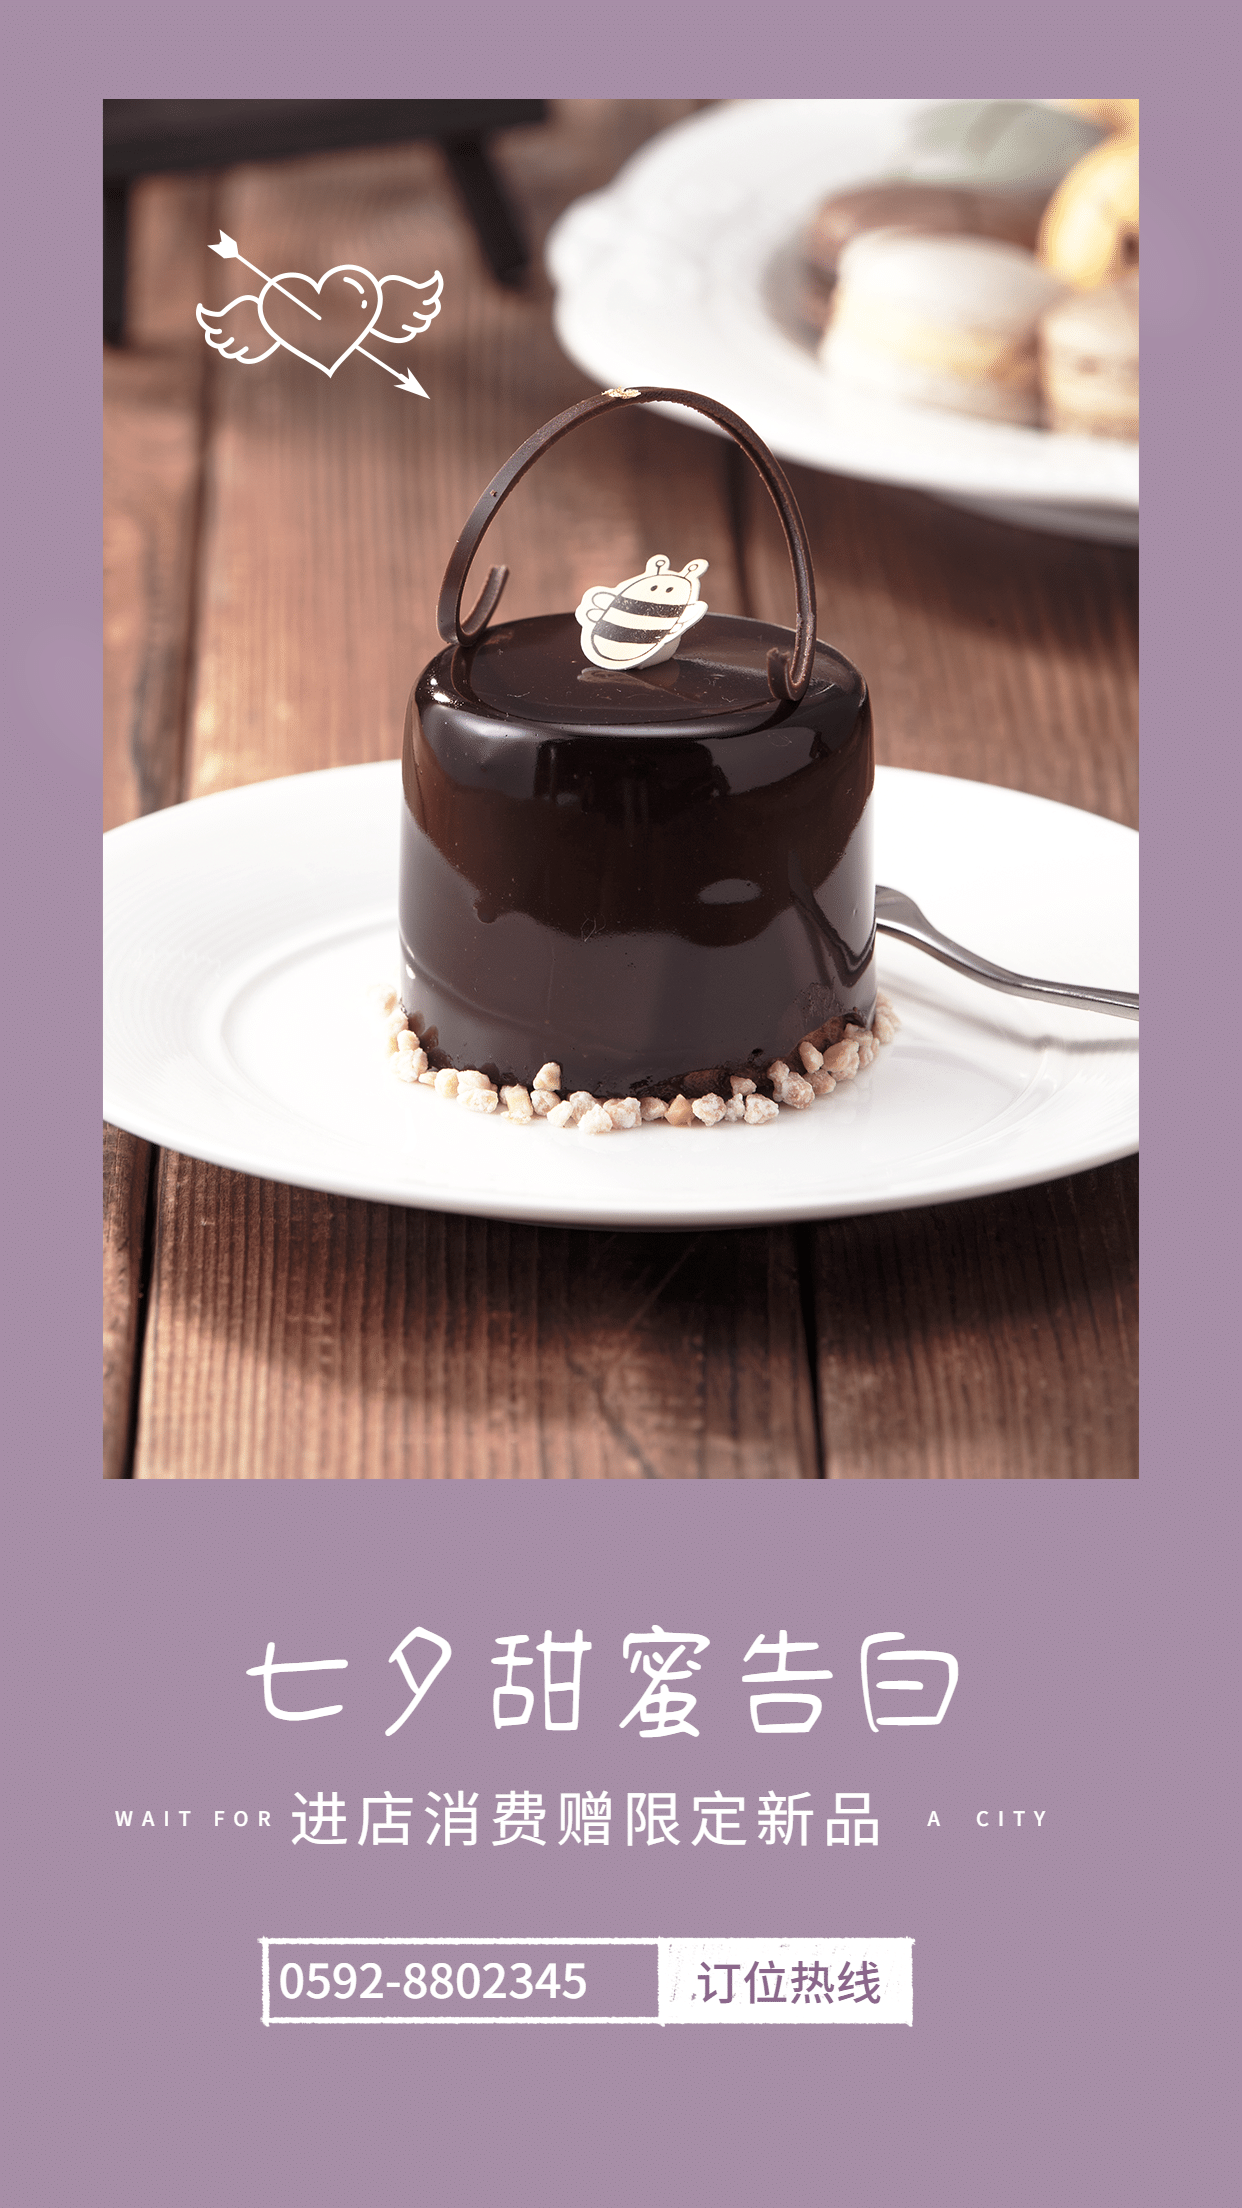 七夕情人节甜品店促销轻设计海报